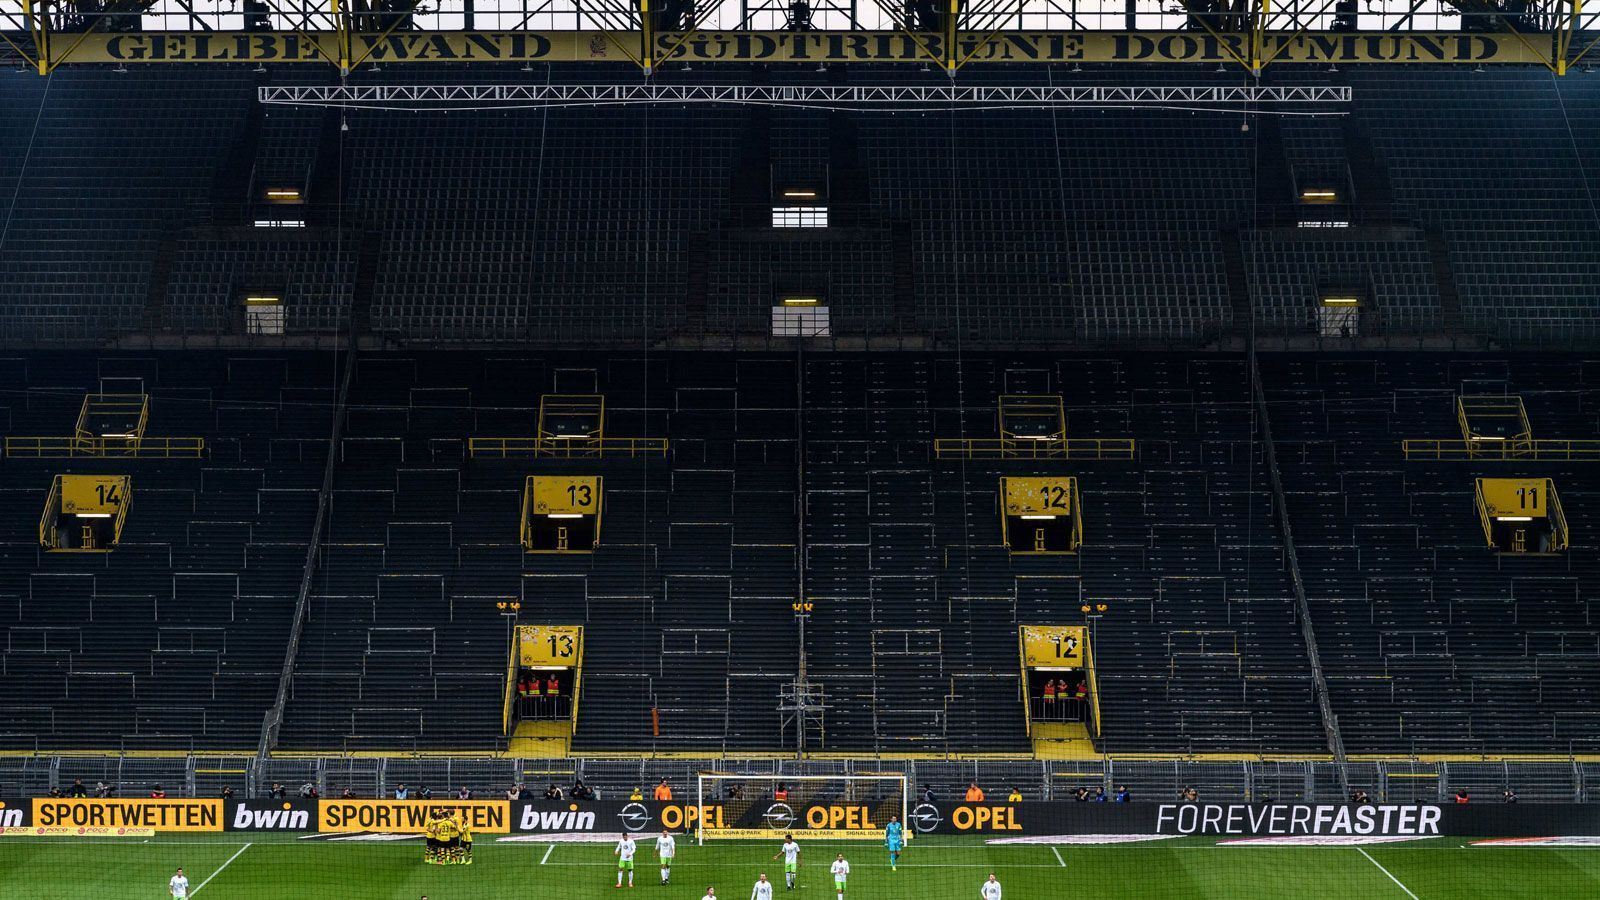 
                <strong>Borussia Dortmund</strong><br>
                Stadion: Signal Iduna ParkKapazität: 81.365Vorgehen: Dauerkartenverkauf aktuell ausgesetzt, Dauerkartenbesitzer erhalten Vorverkaufsrecht auf Tagestickets bei reduziertem Kontingent
              